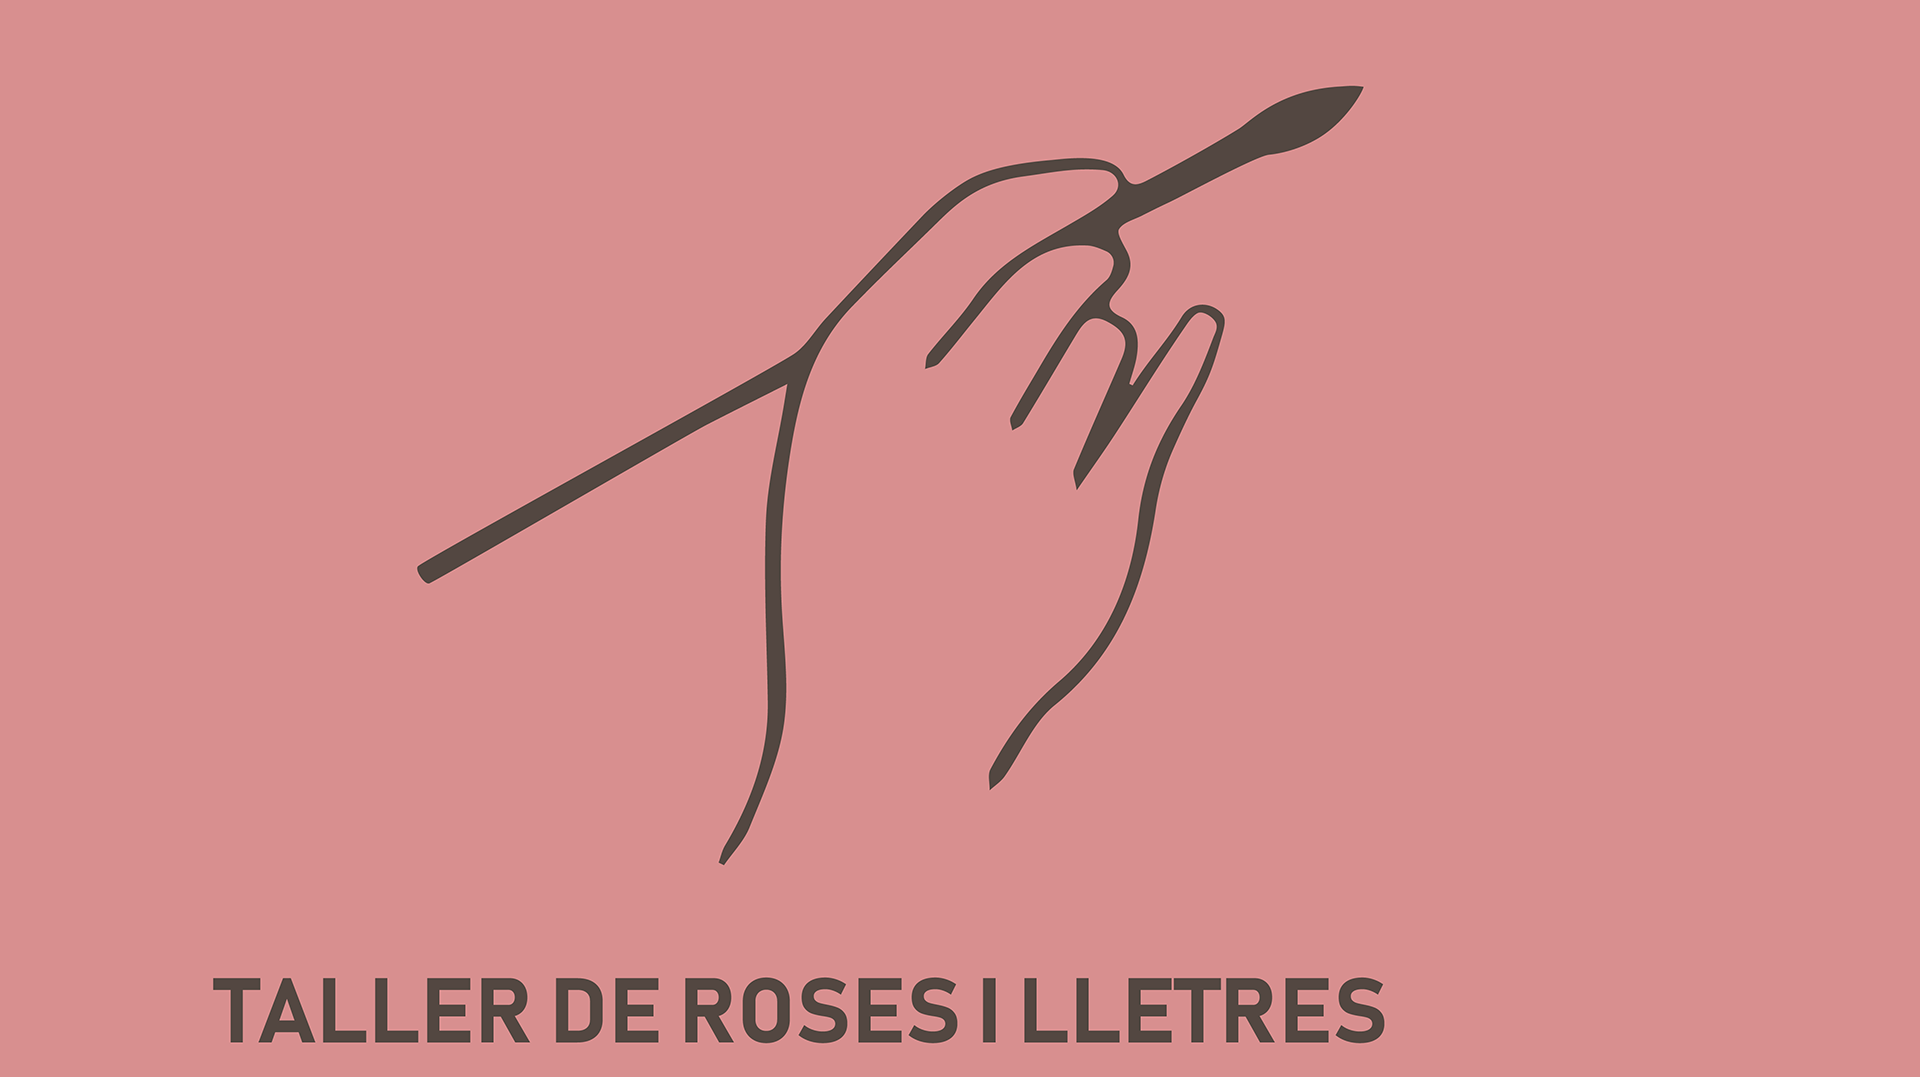 Taller de roses i lletres